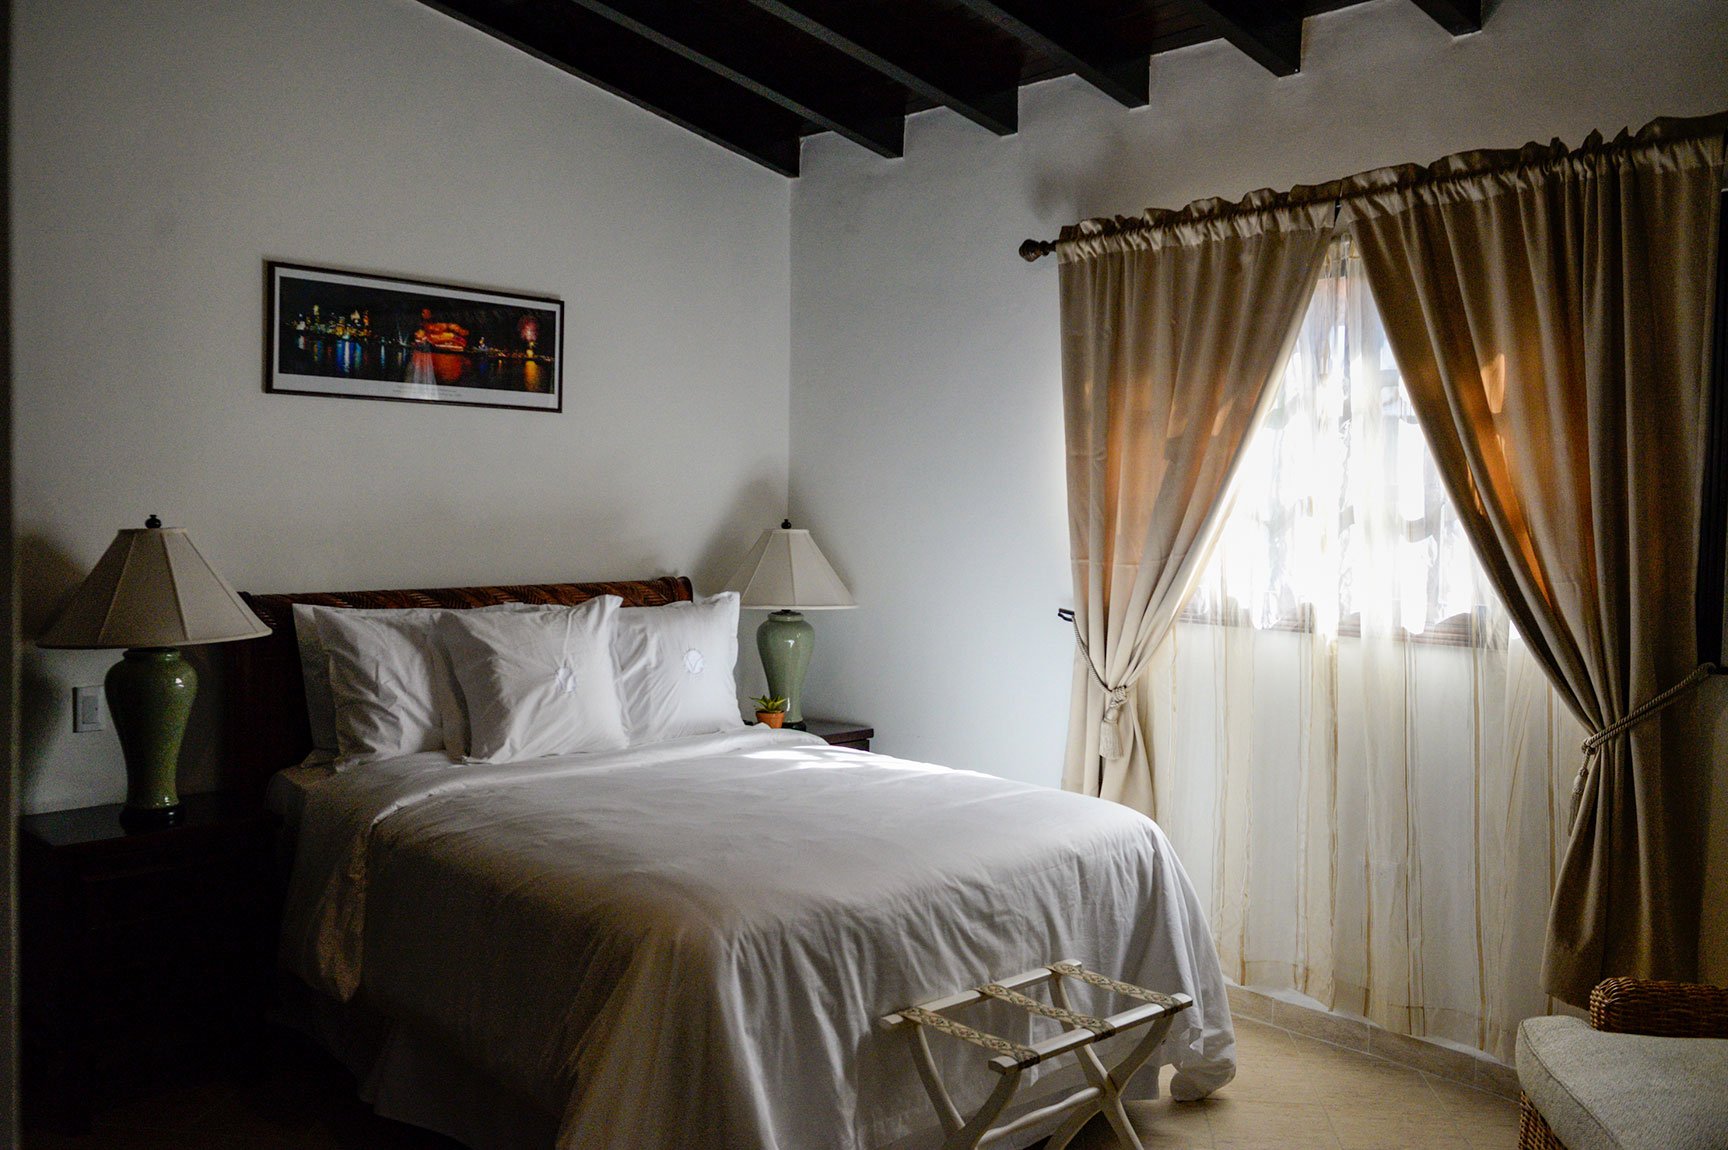 The 2nd Bedroom in the Villa at Vientos del Caribe